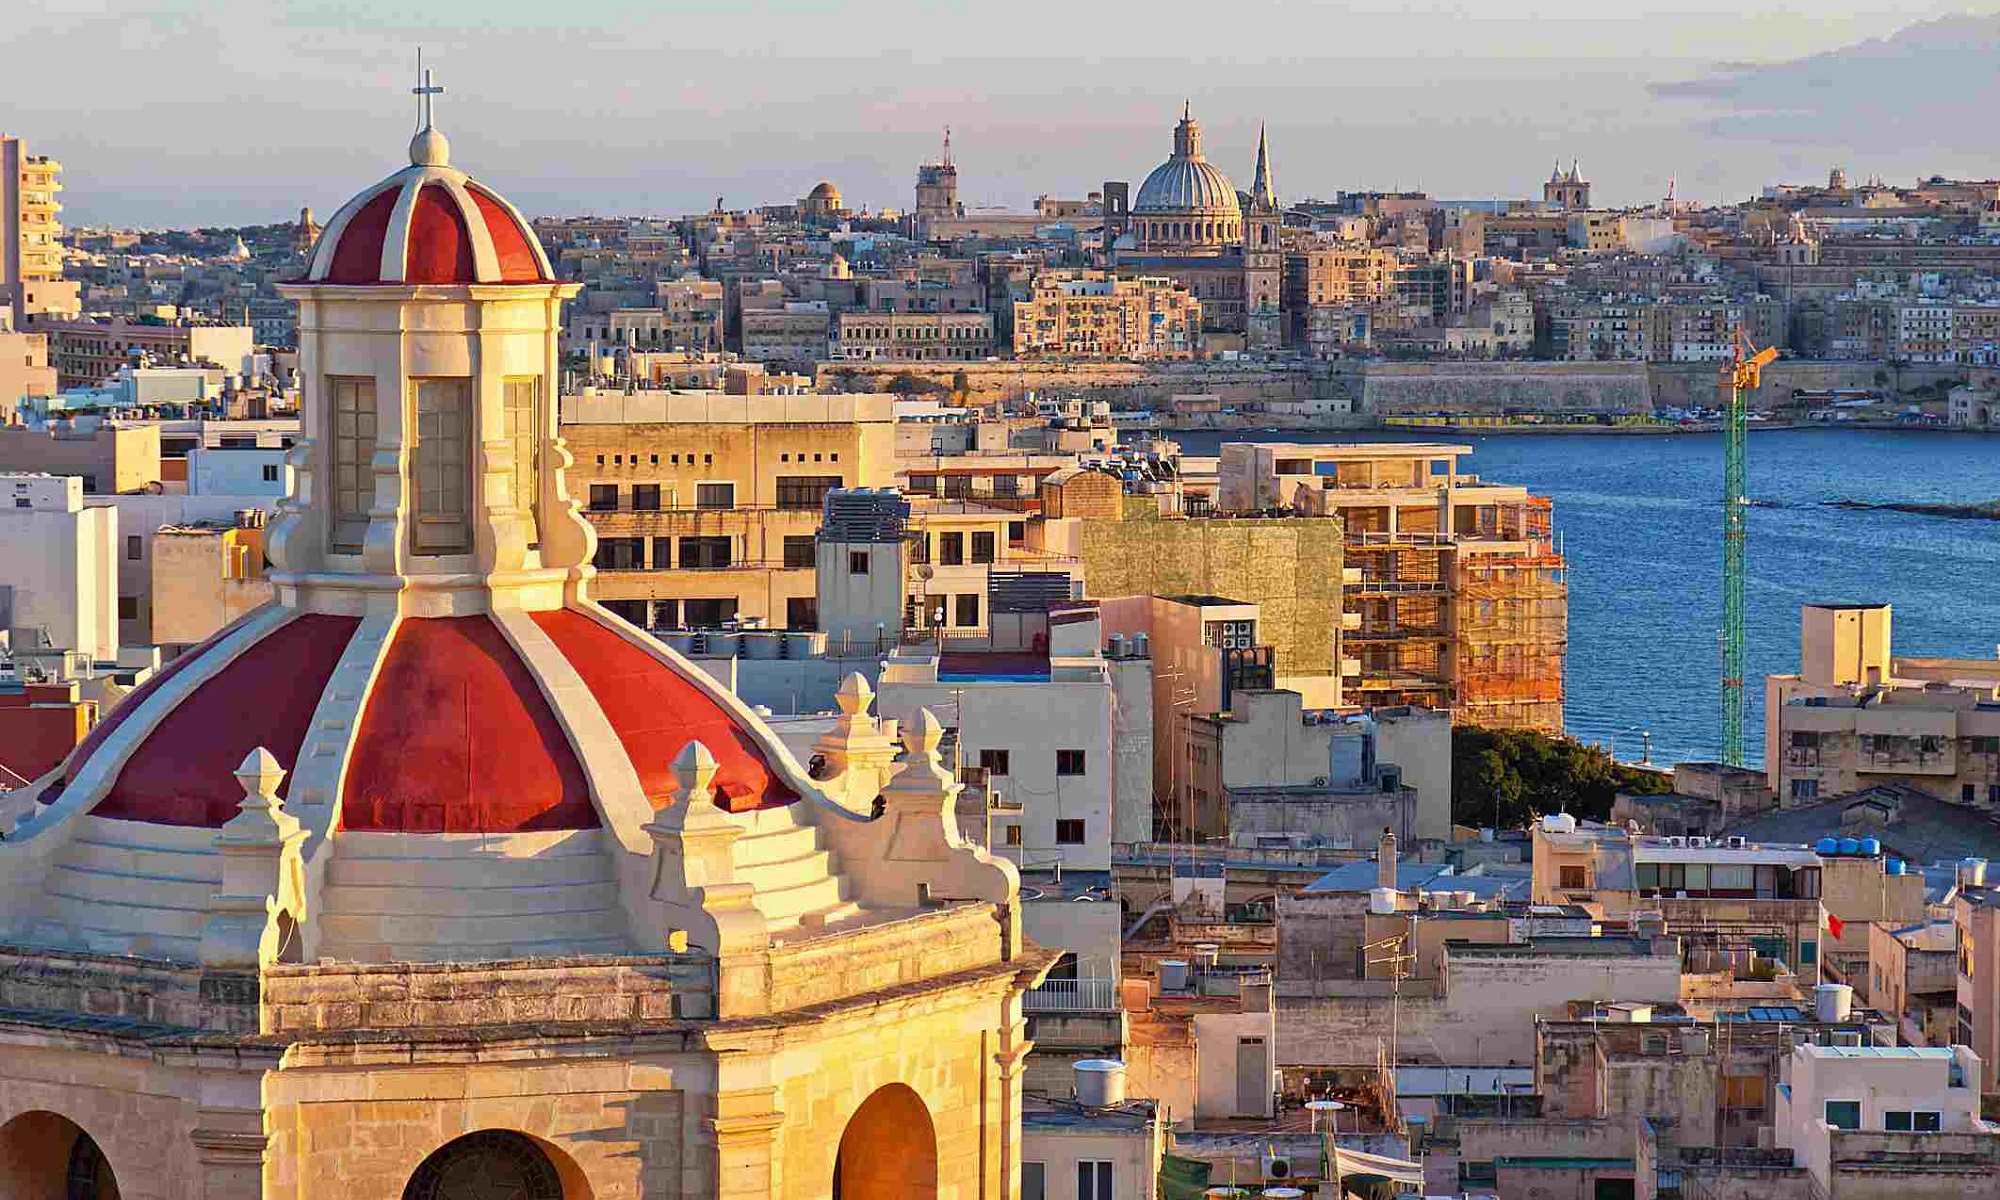 Getting an employment visa work permit in Malta